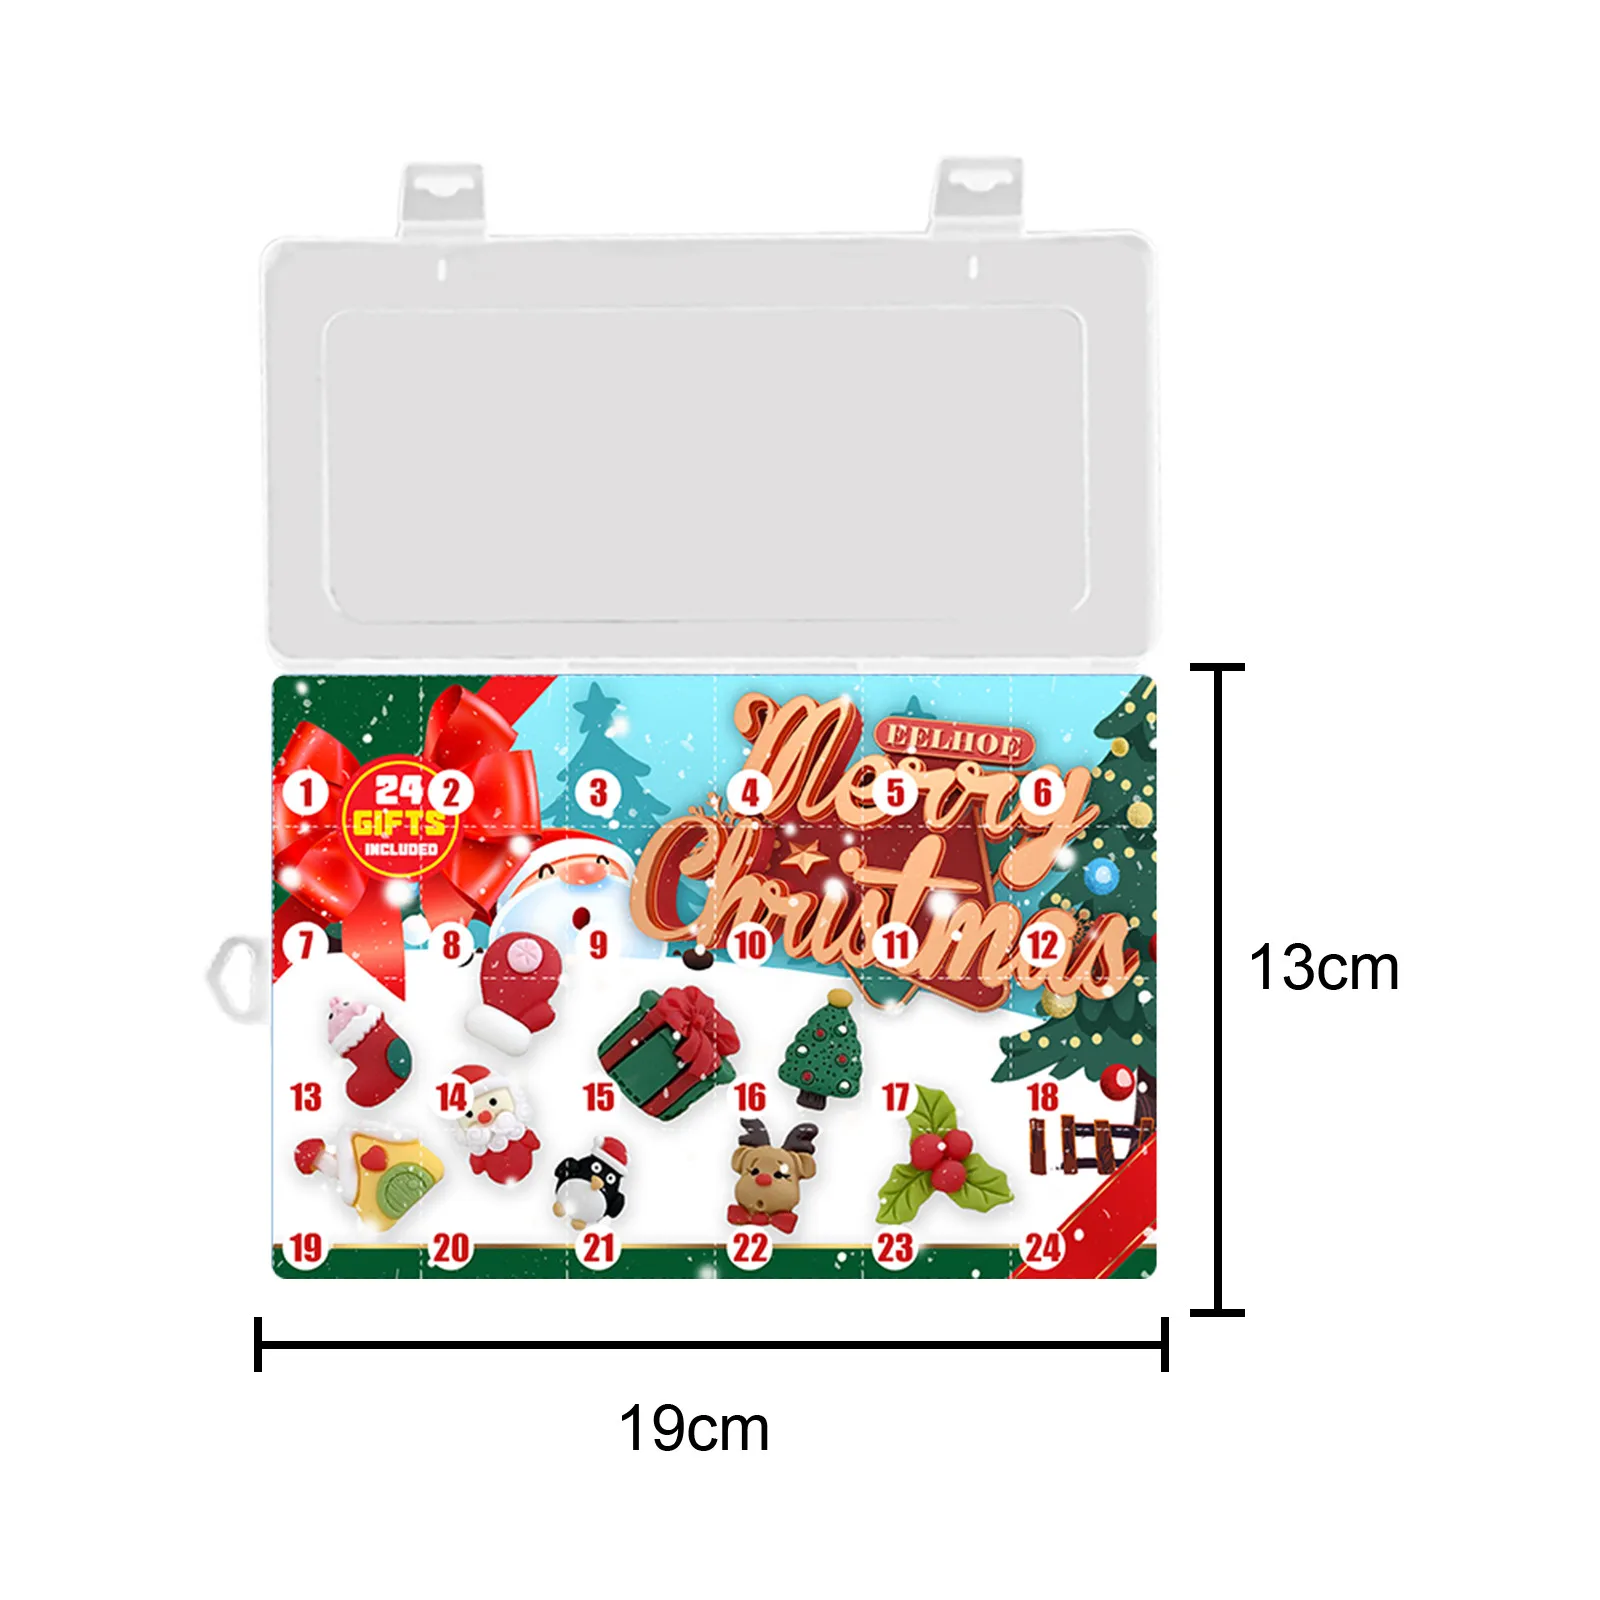 Календарь с адвентом Elf, веселые Коллекционные Фигурки с сюрпризом на 24  дня, календарь с обратным отсчетом для подарка друзьям на Рождество,  календарь для детей | AliExpress